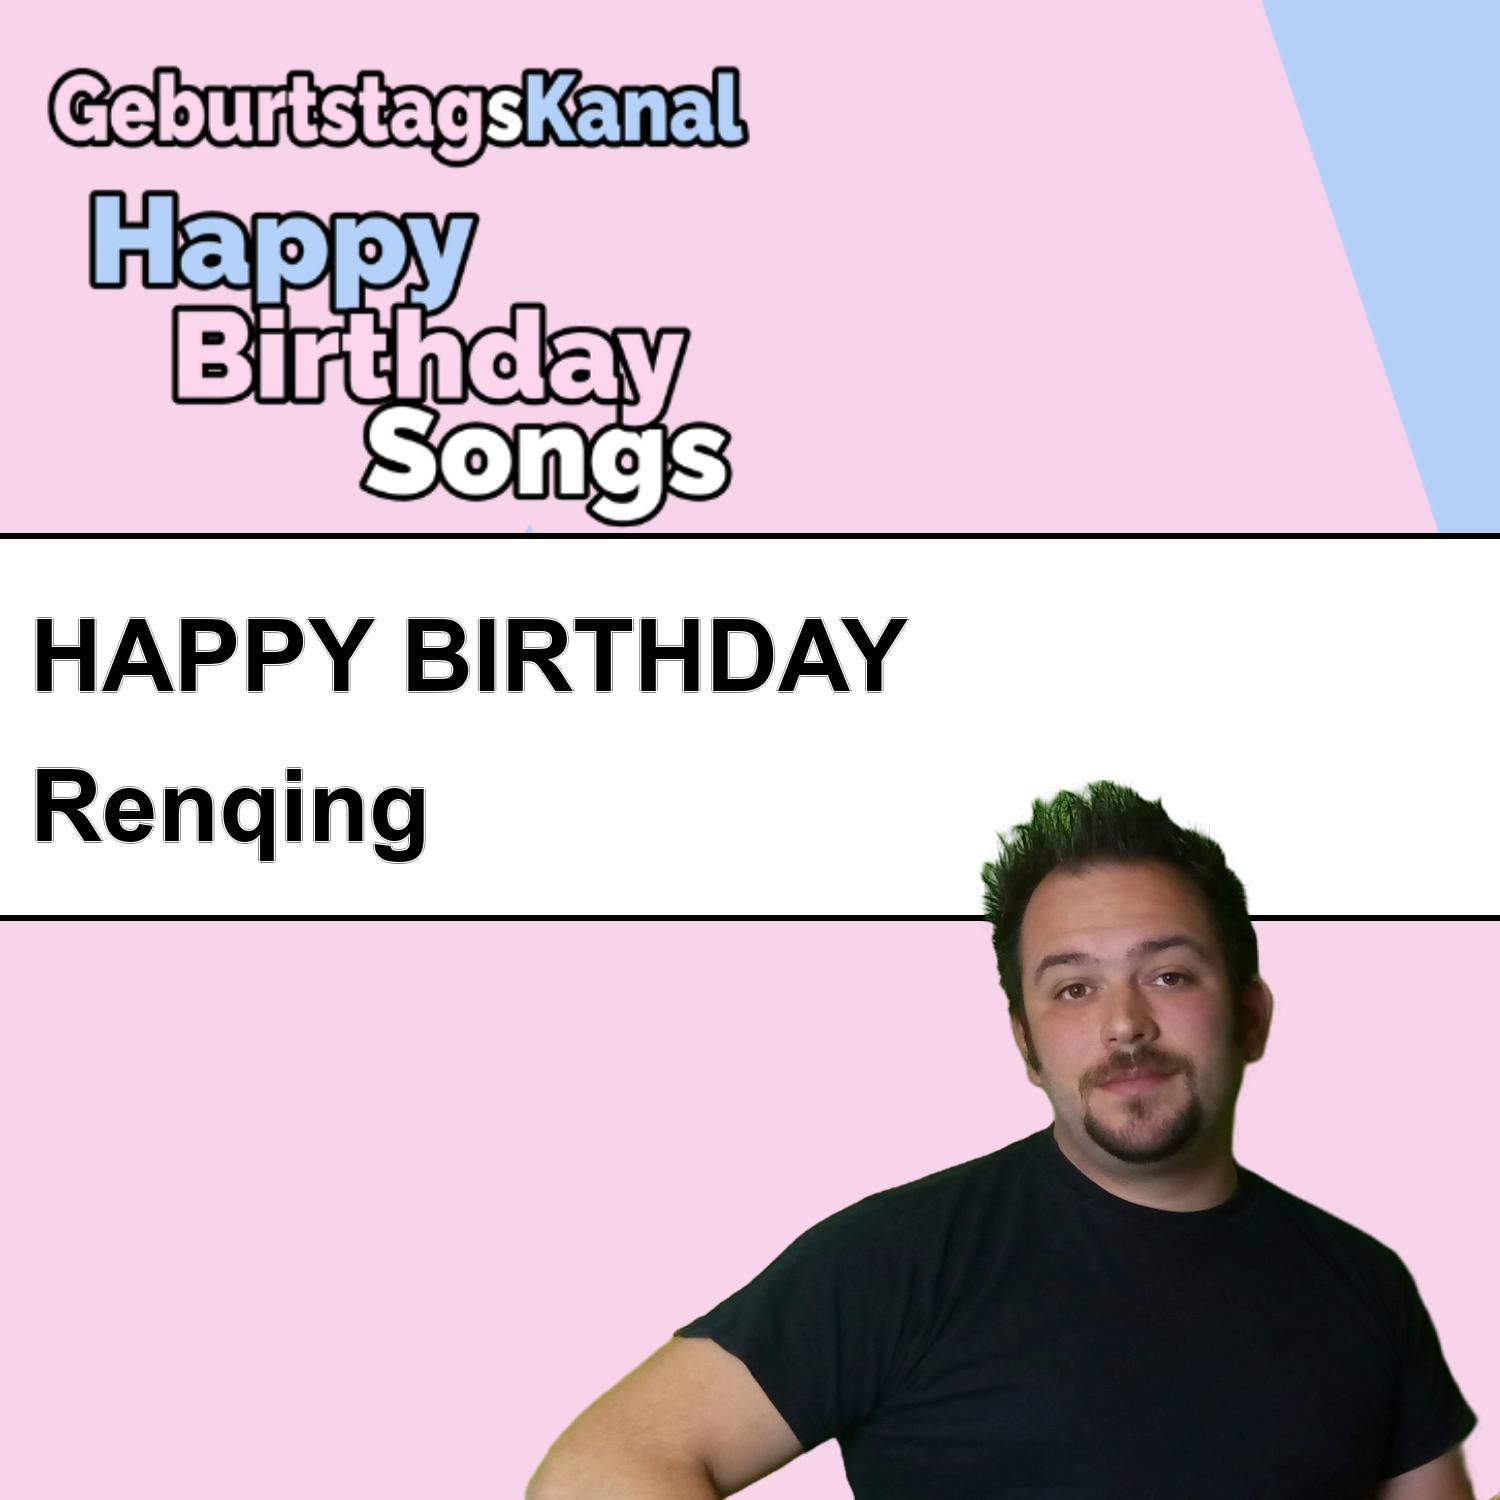 Produktbild Happy Birthday to you Renqing mit Wunschgrußbotschaft